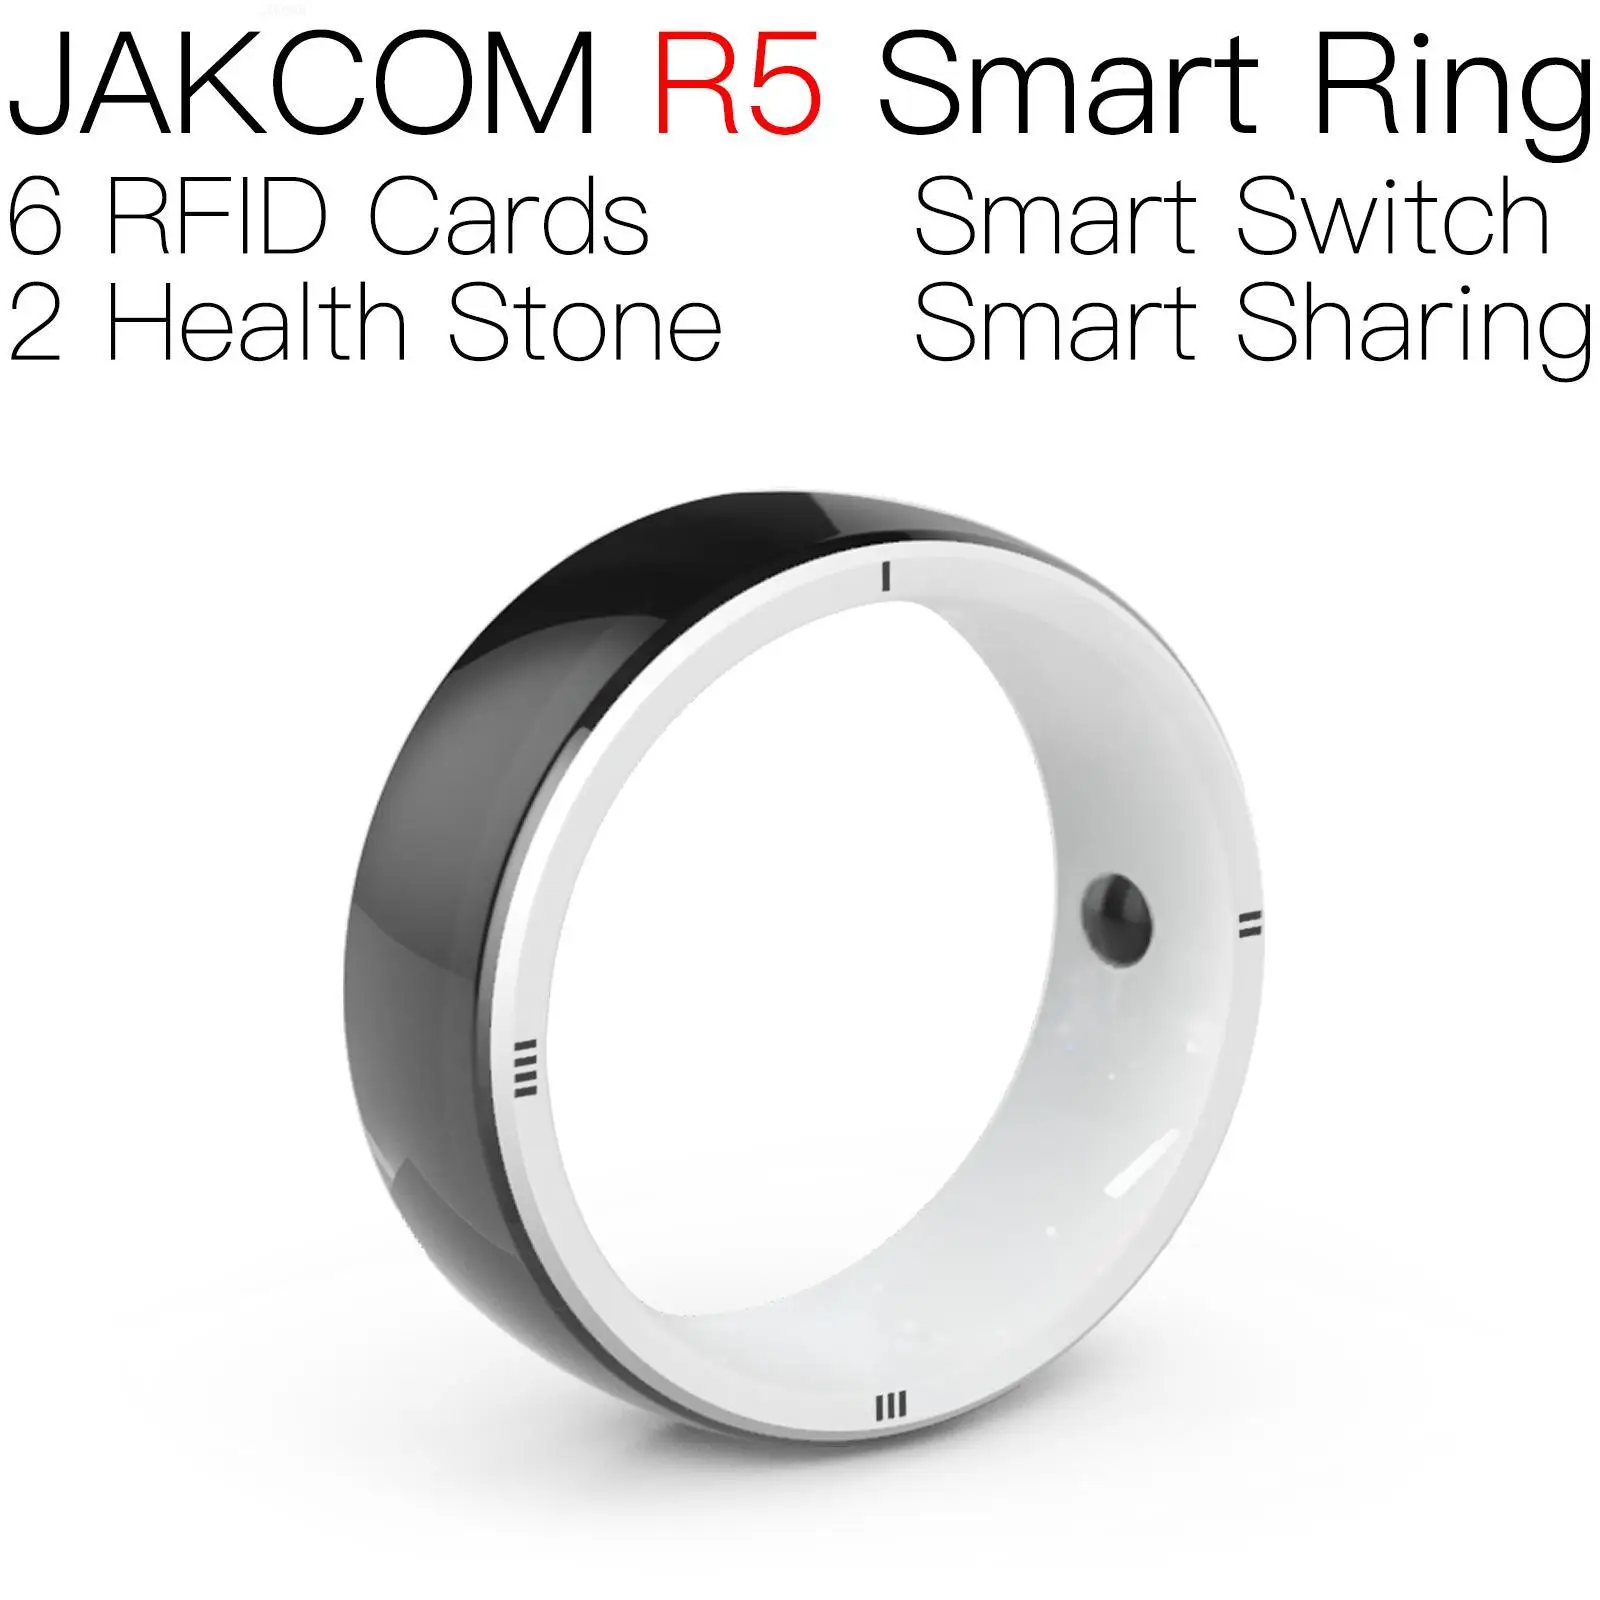 

Смарт-кольцо JAKCOM R5, новый продукт, как amongus rfid-метка, ключ, безопасное уплотнение em4100 s50, Классический 1k uid, с возможностью записи, кардридер 6 в 1